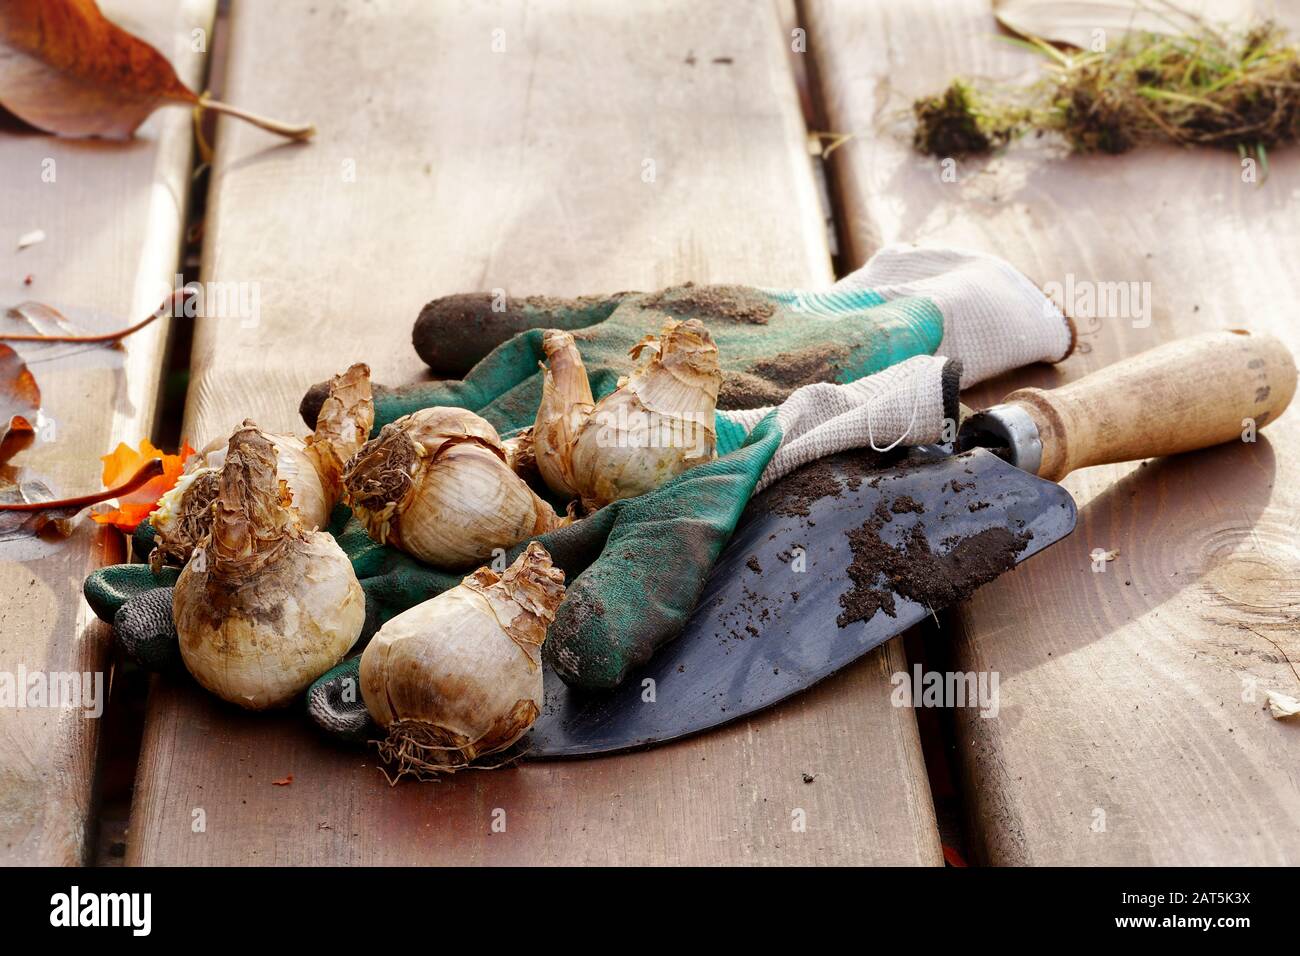 Komposition mit Narzissenzwiebeln, Spachtel und Handschuhen auf einem Holzgartentisch Stockfoto